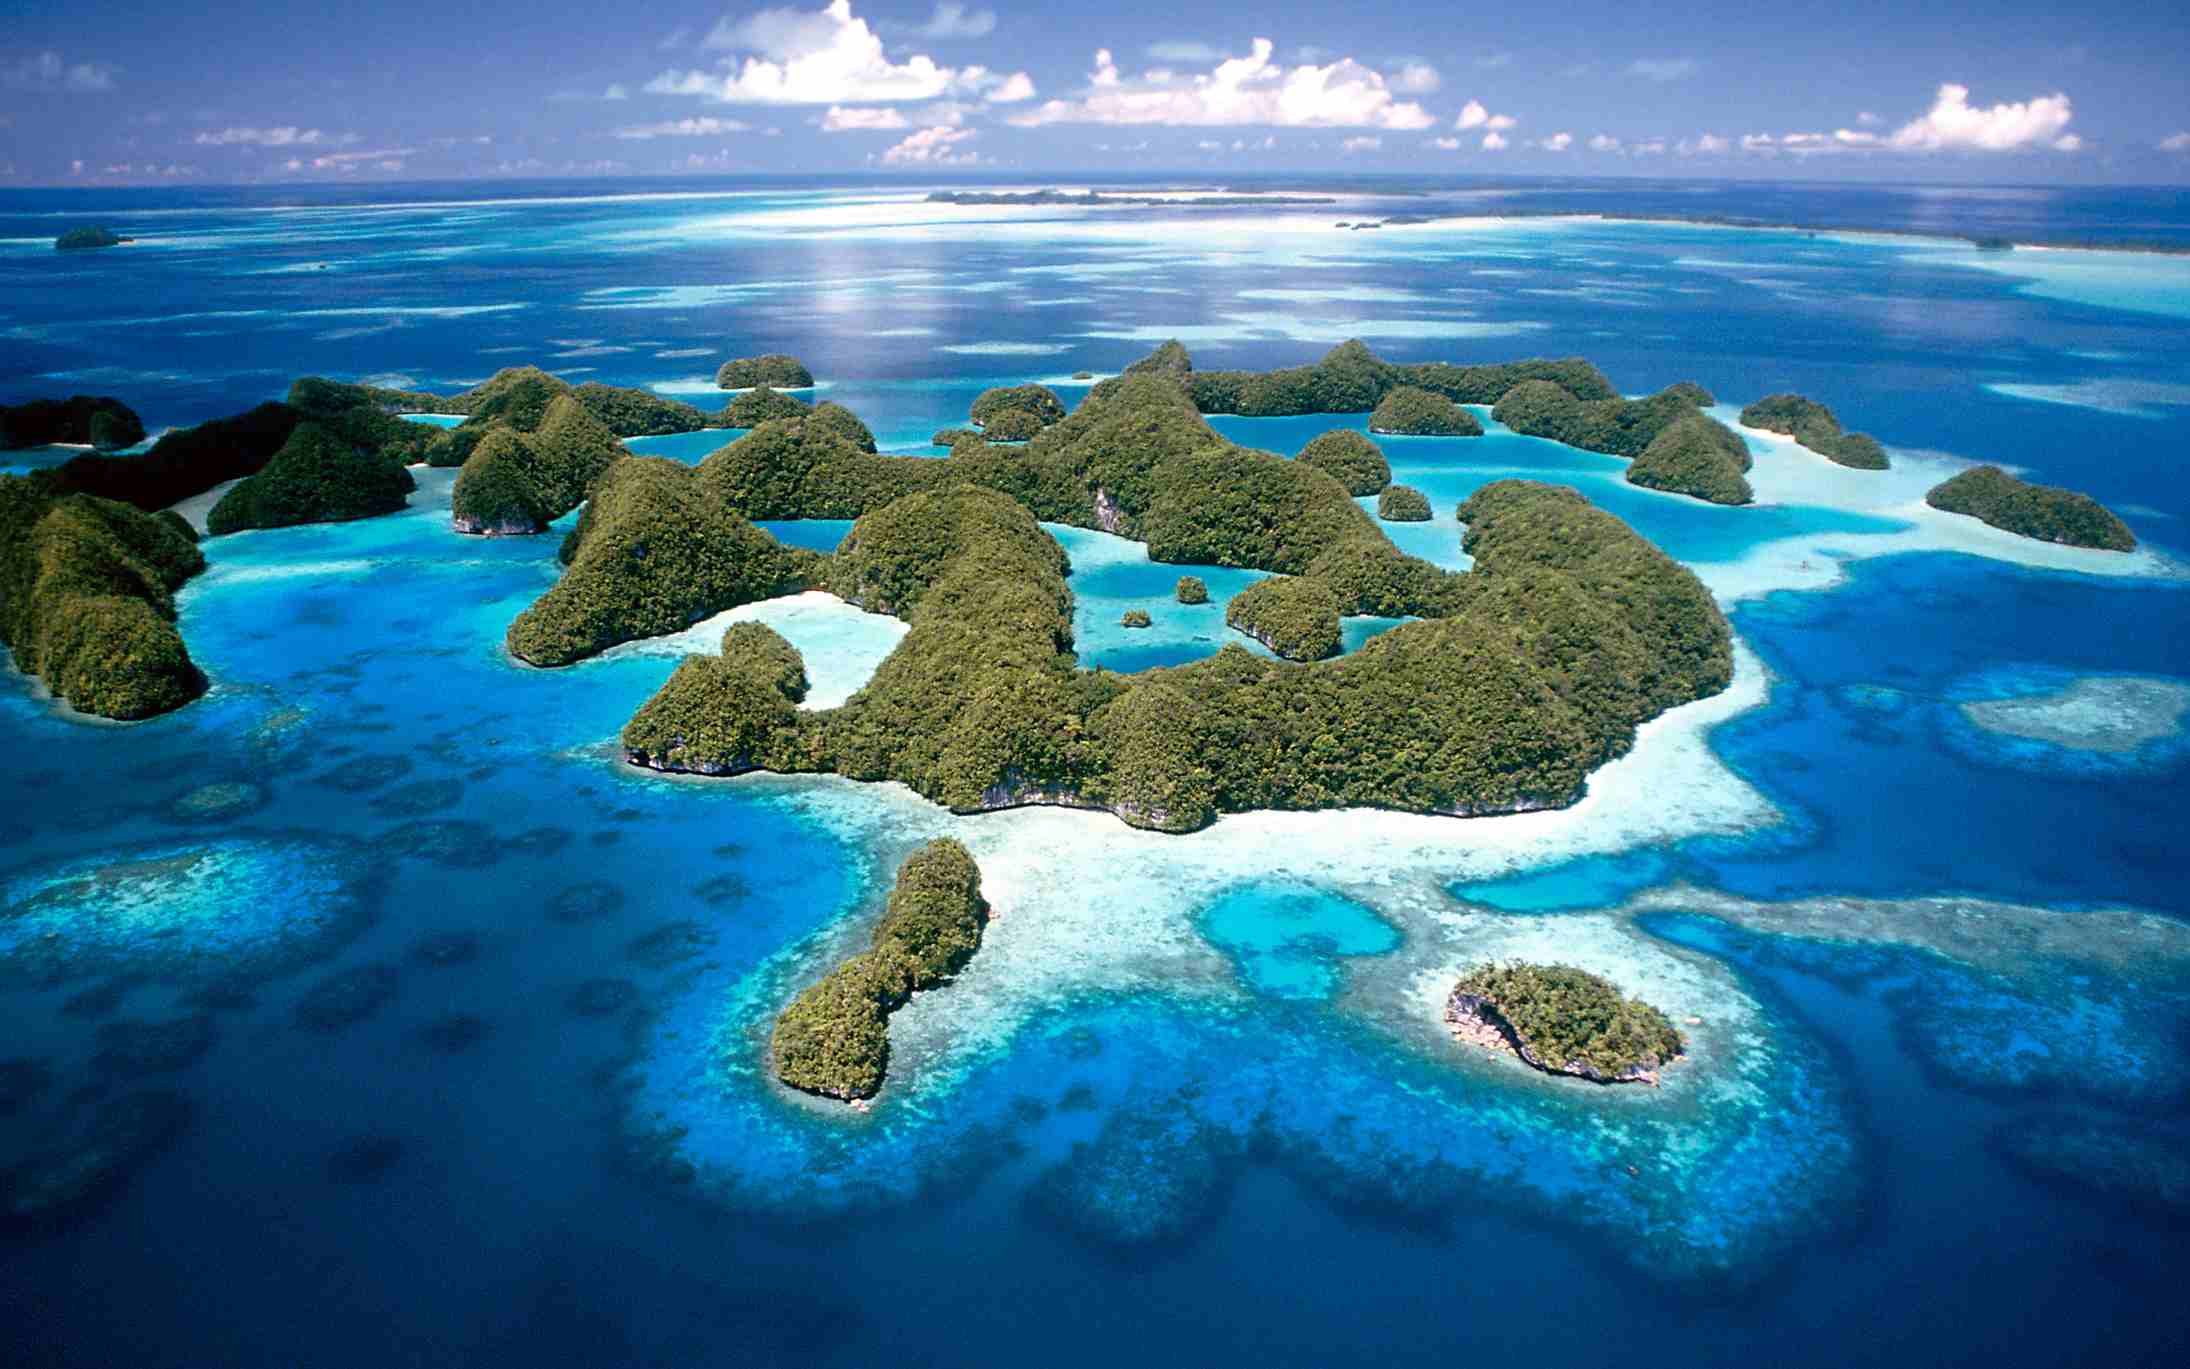 Форма тихого океана. Остров Палау Микронезия. Коралловые острова Микронезии. Атолл в тихом океане. Федеративные штаты Микронезии.